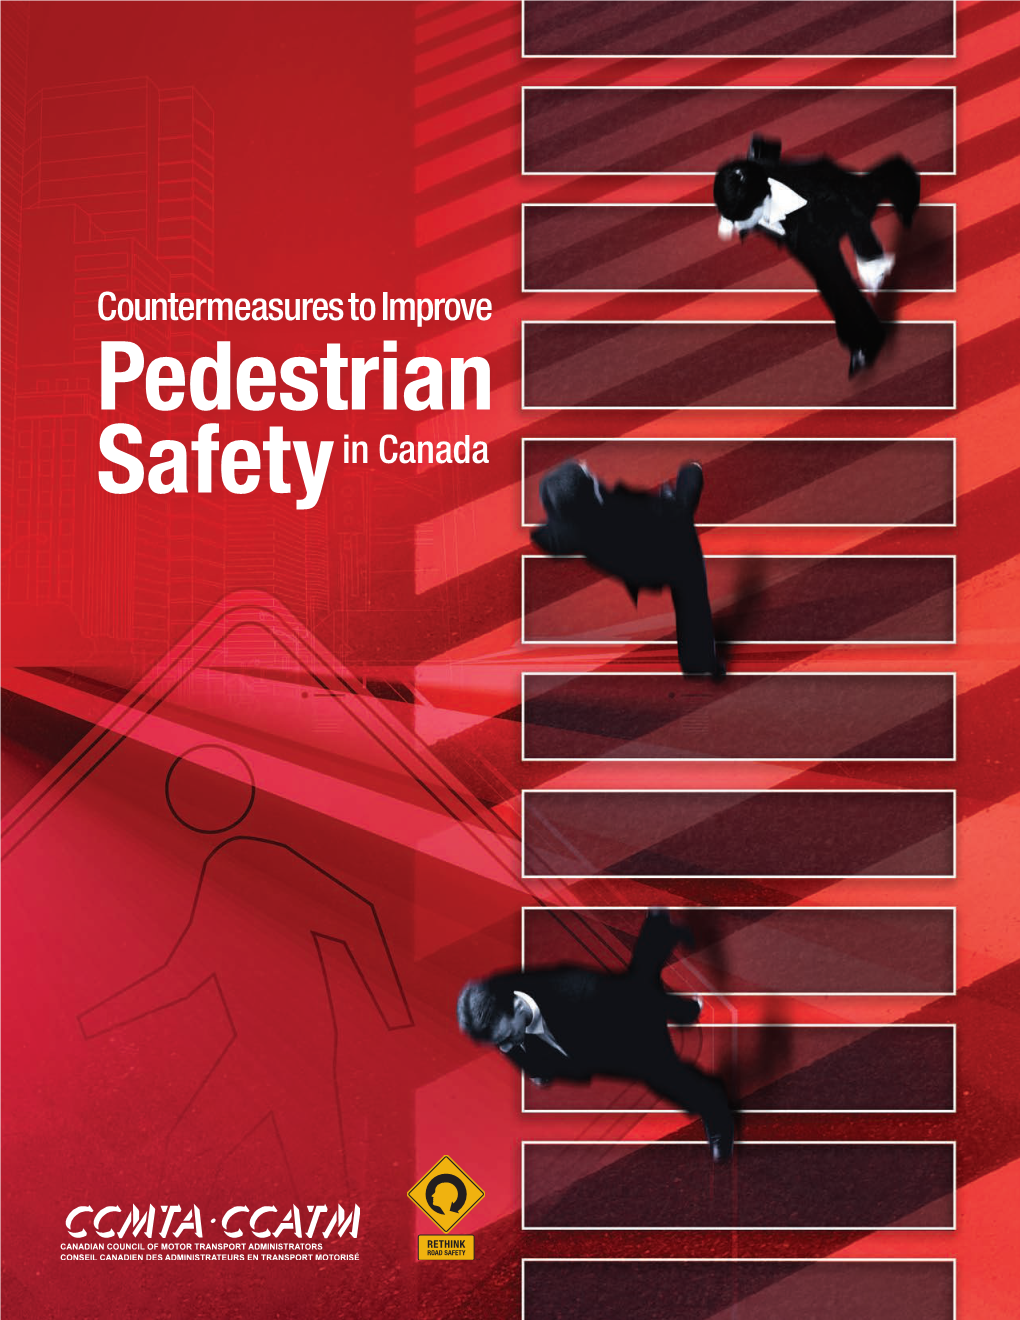 Countermeasures to Improve Pedestrian Safety in Canada | CCMTA